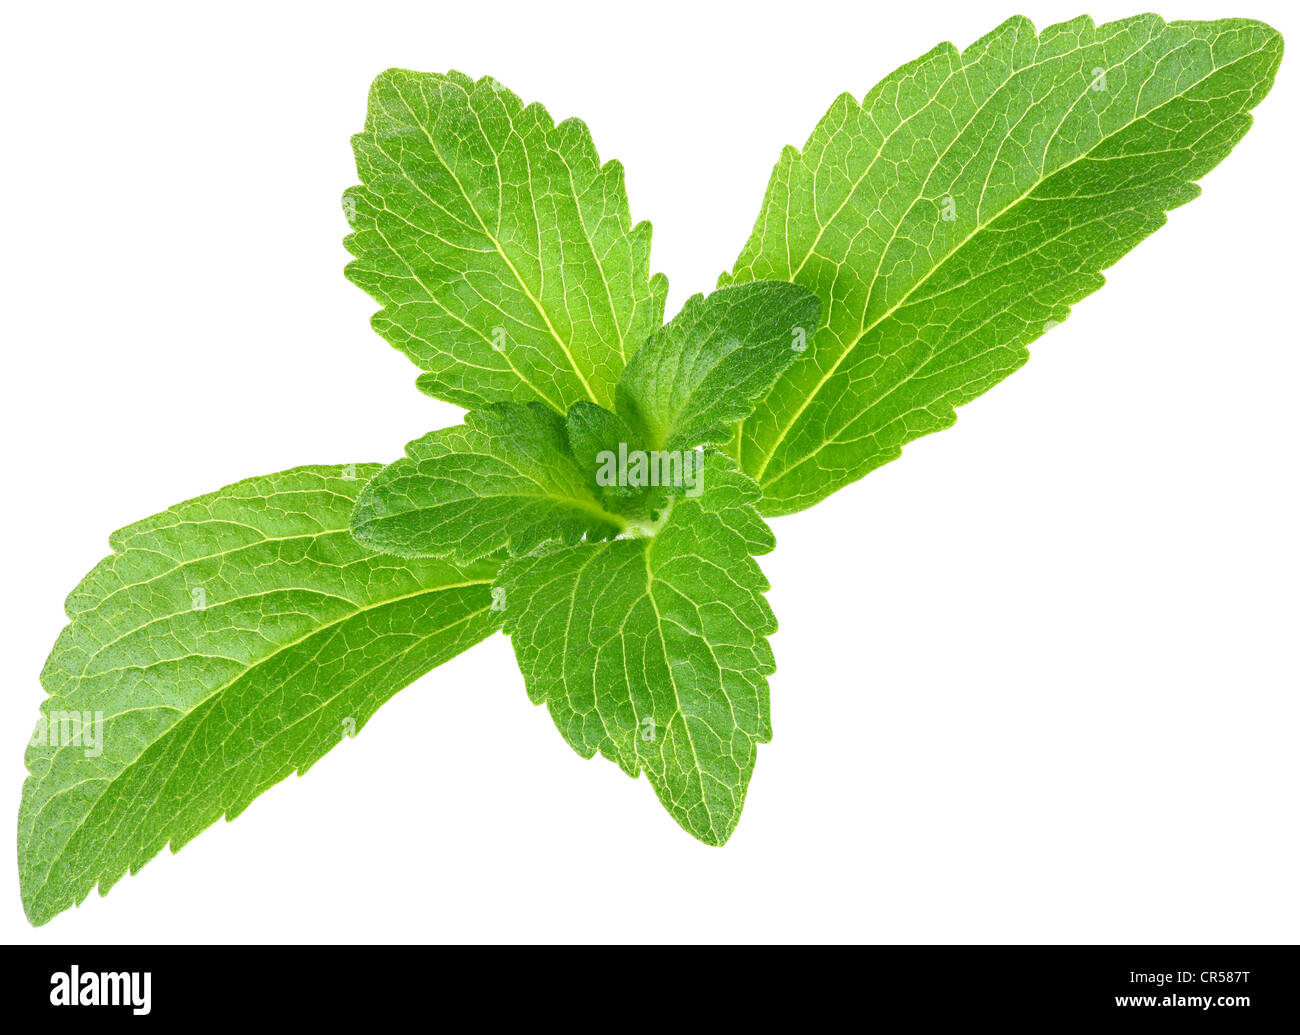 Foglia di stevia immagini e fotografie stock ad alta risoluzione - Alamy